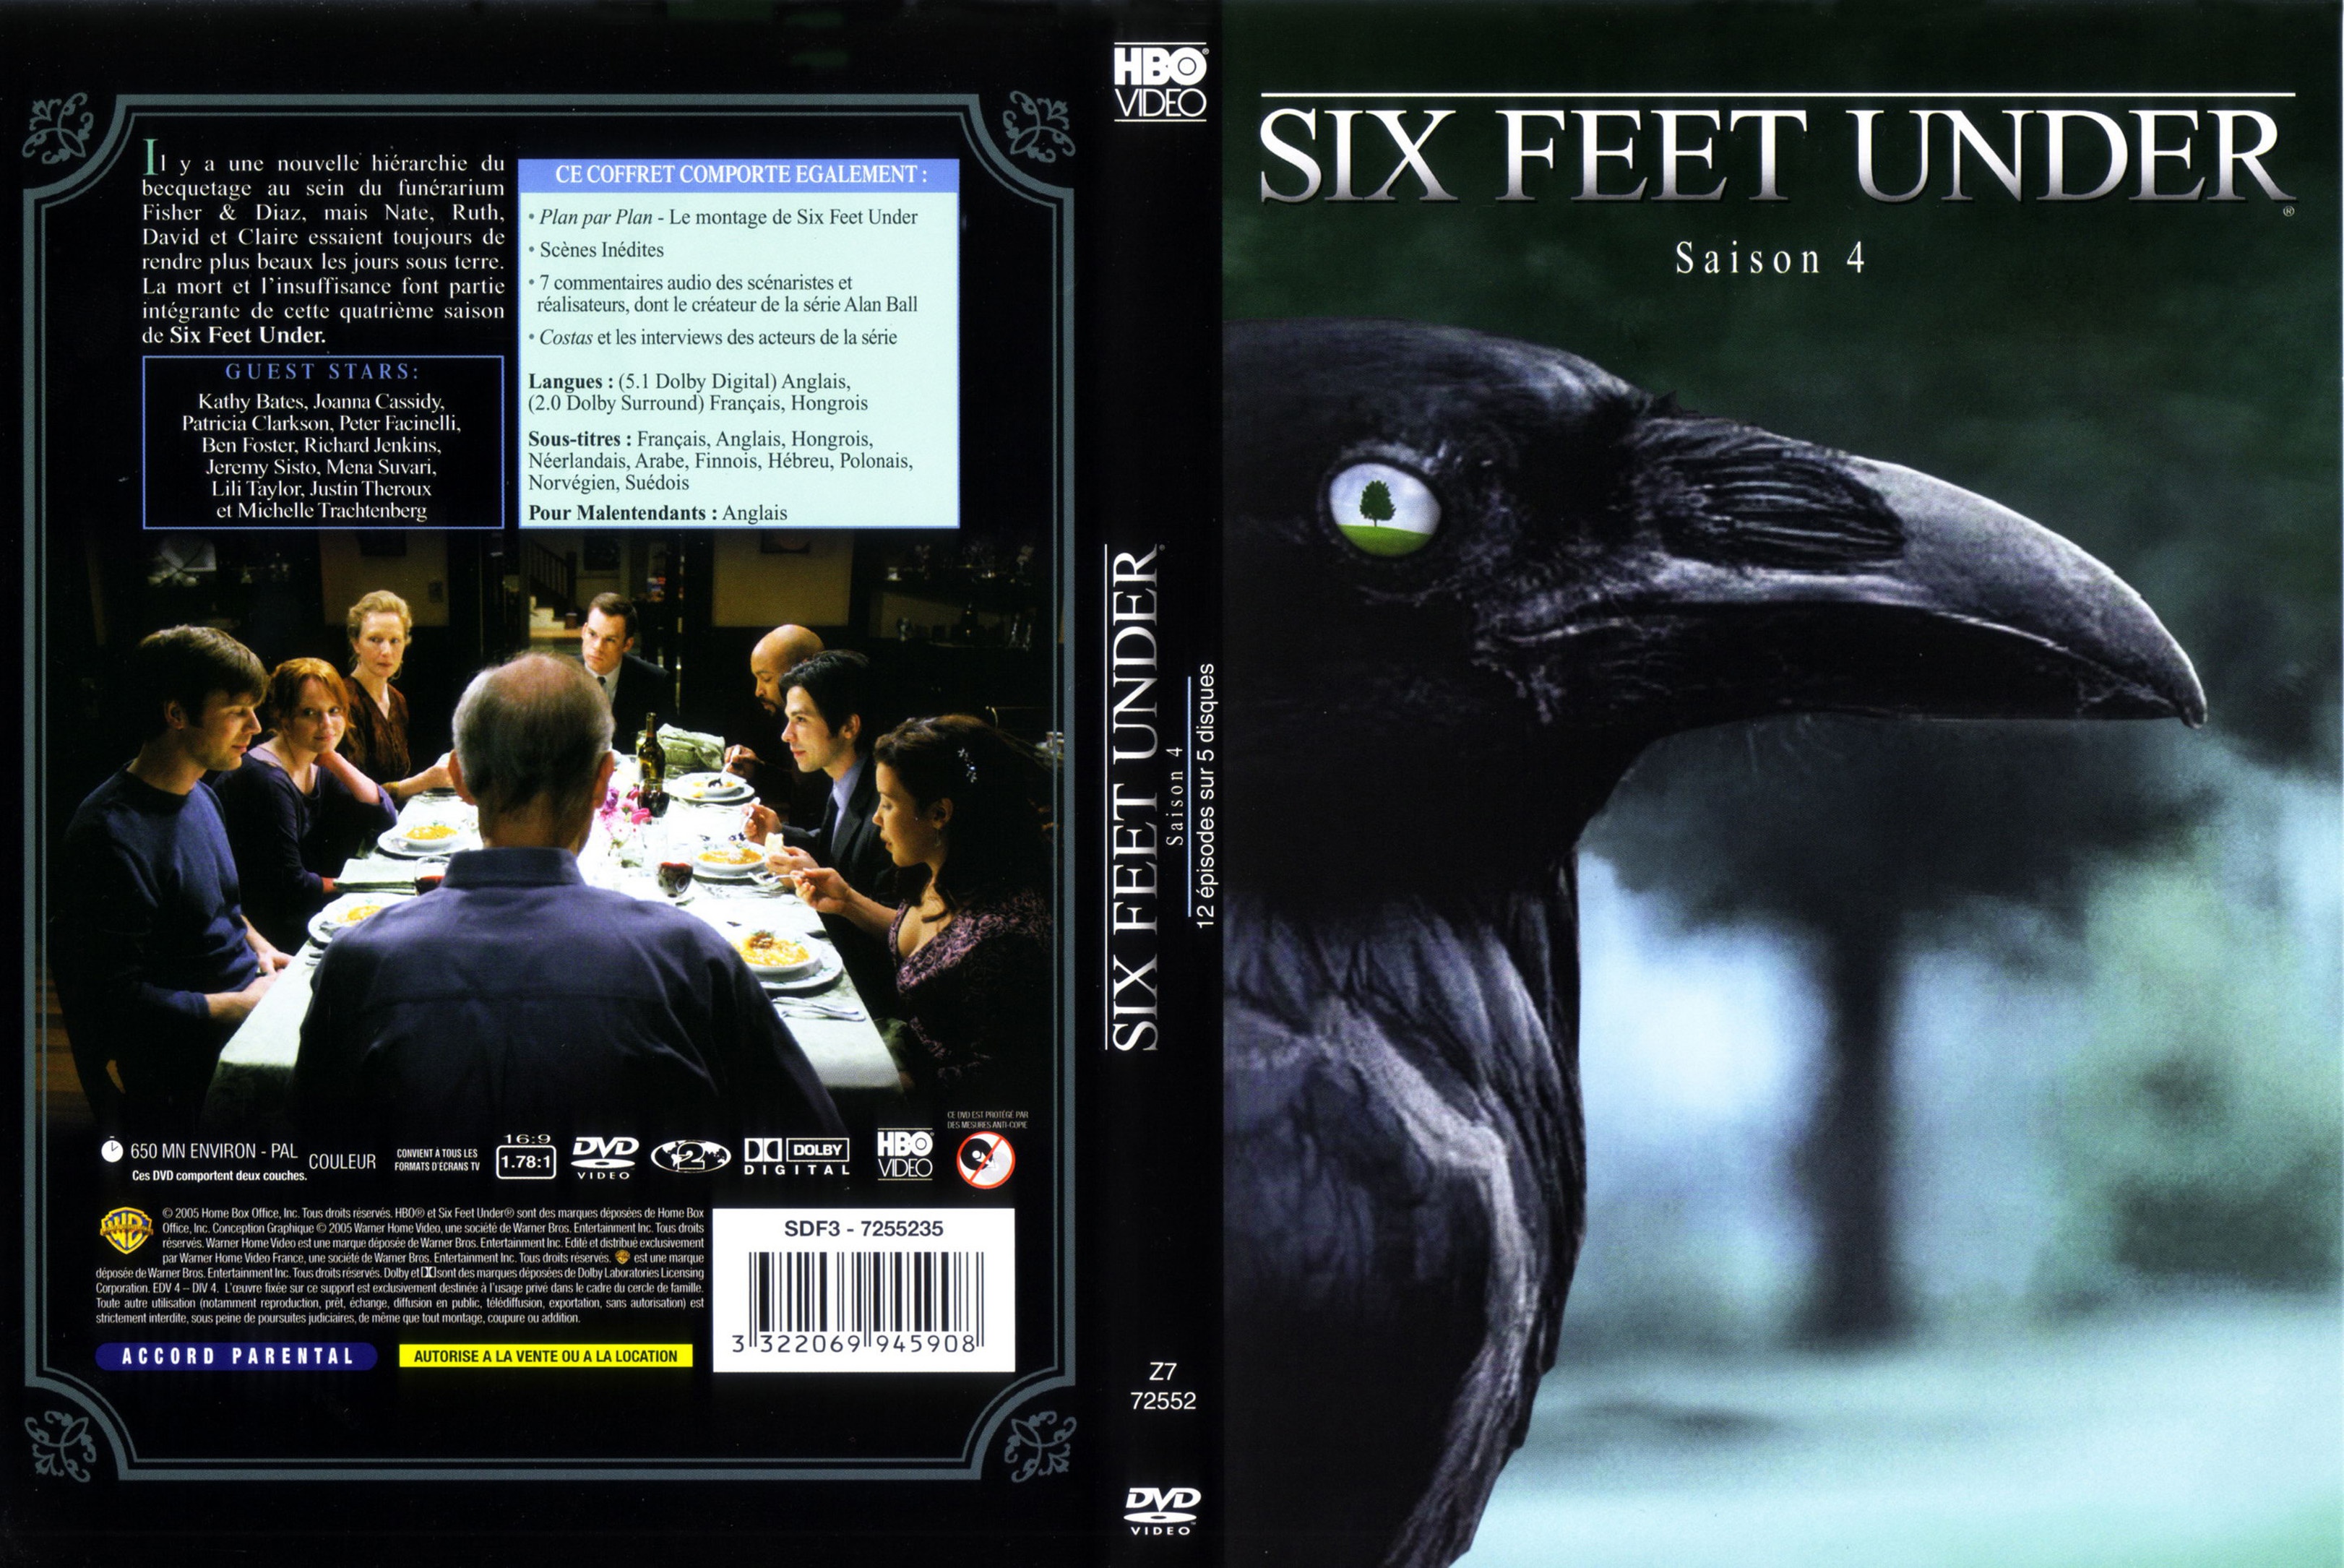 Jaquette DVD Six feet under Saison 4